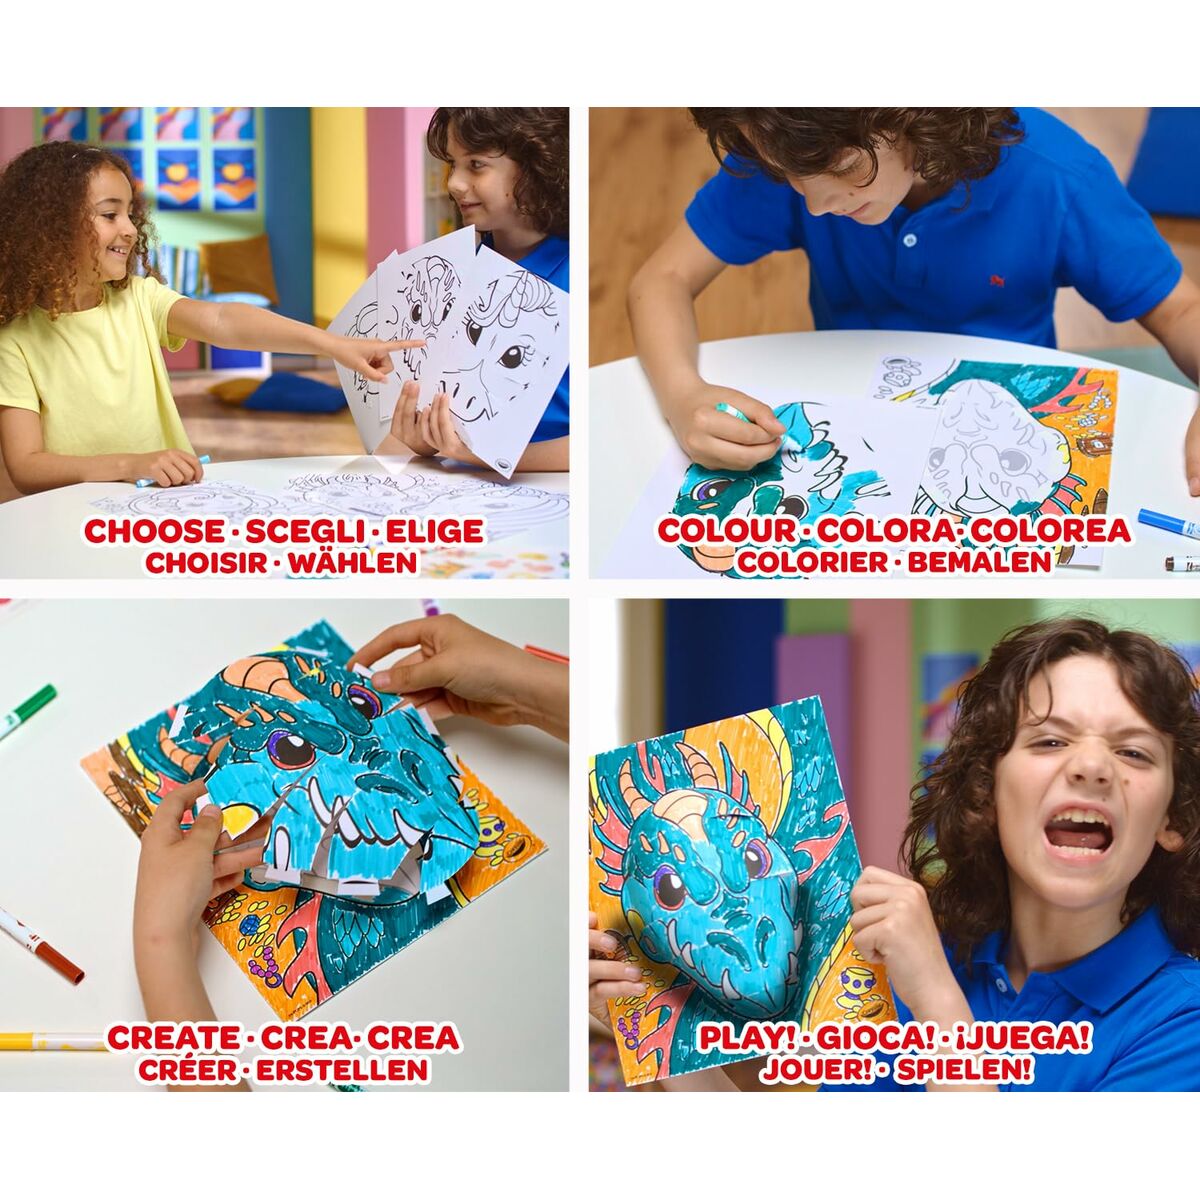 Målarbilder Crayola 3D Color Pops Mystical Natur-Leksaker och spel, Kreativa aktiviteter-Crayola-peaceofhome.se